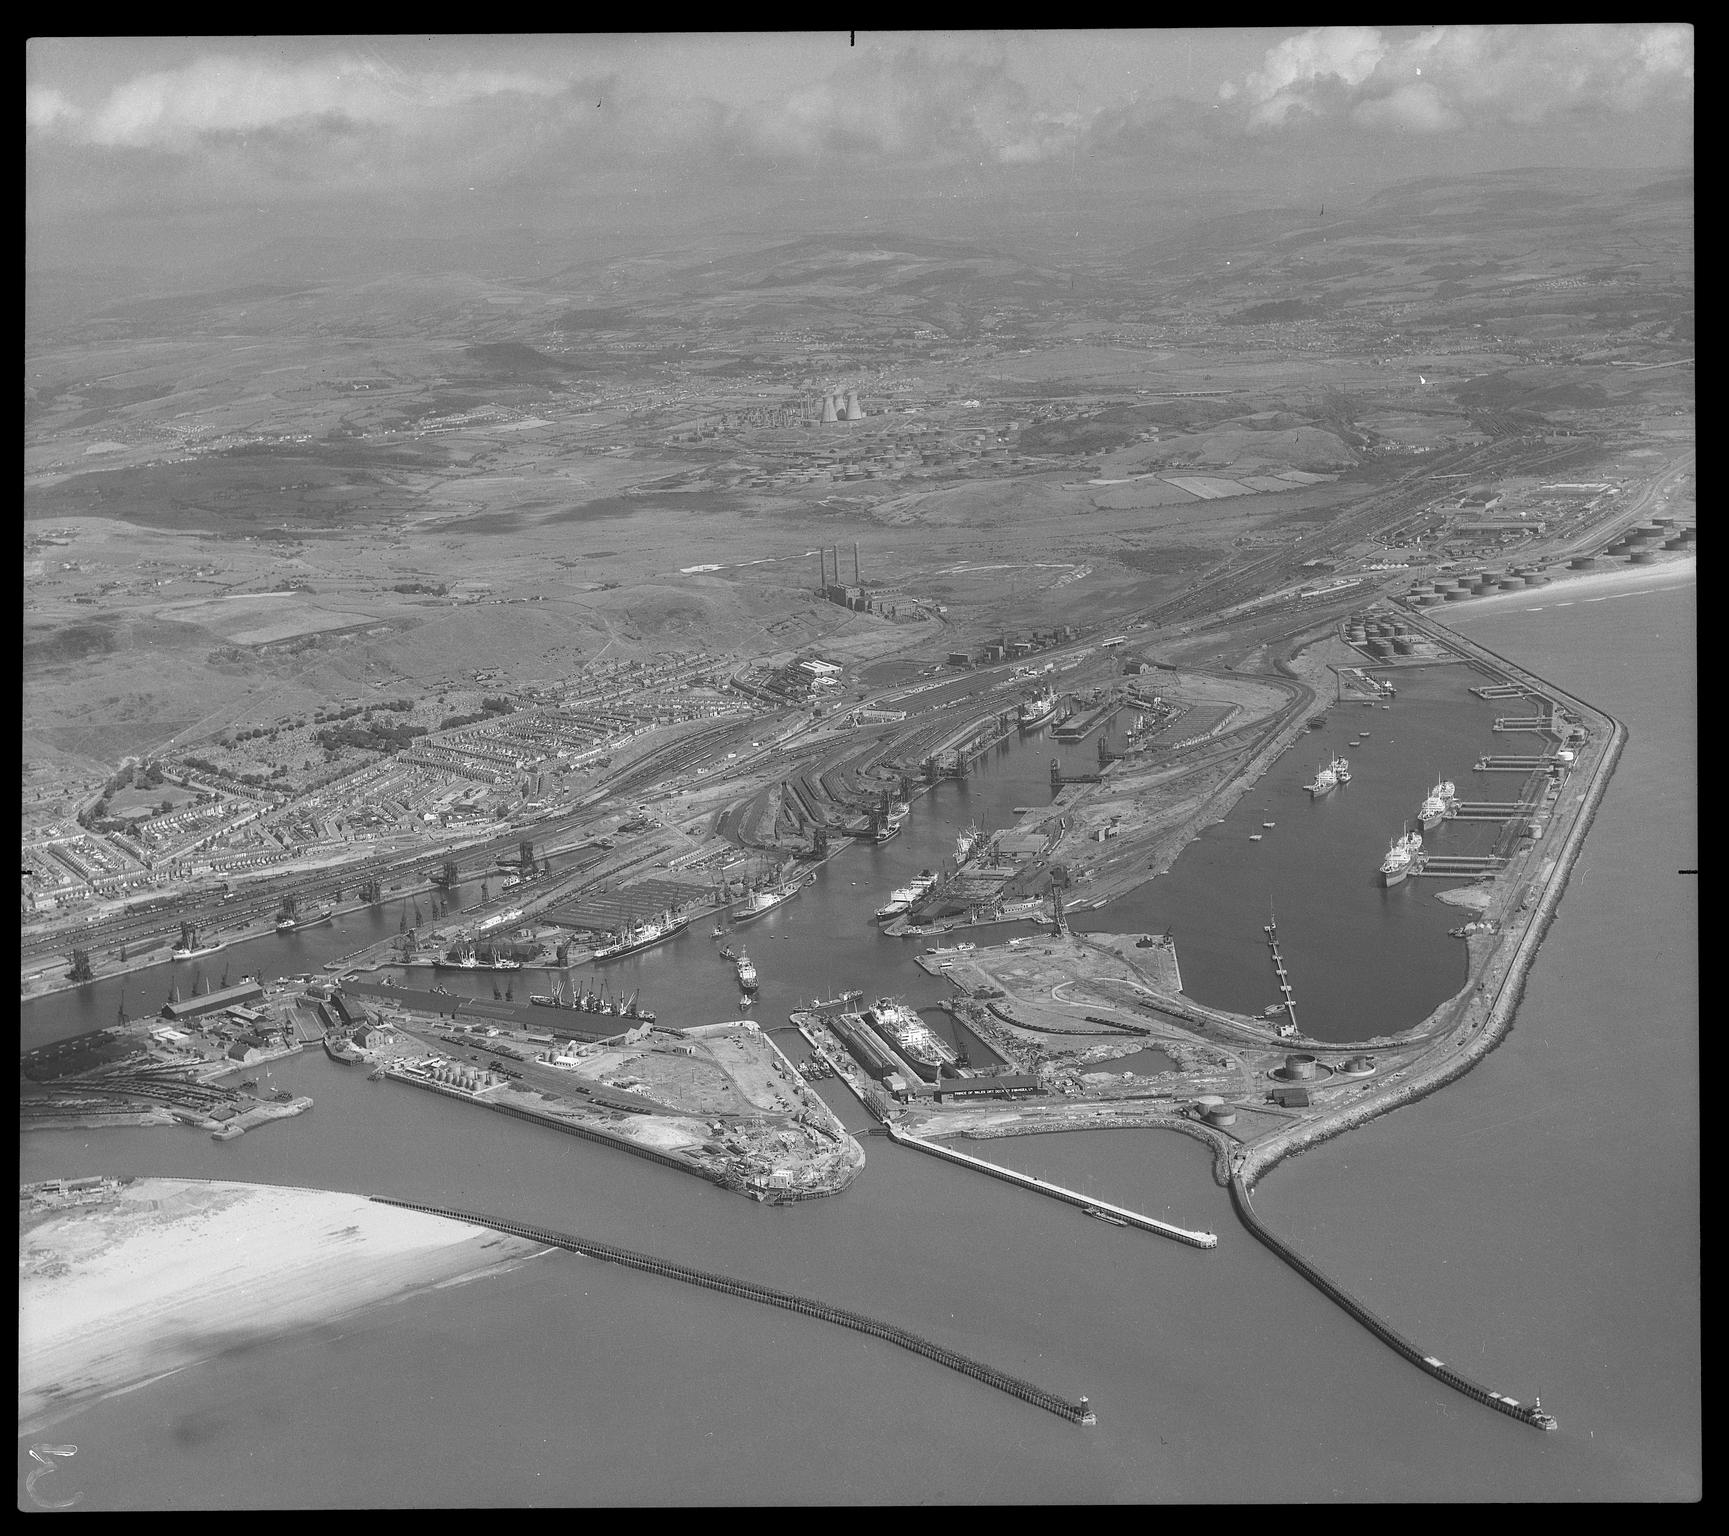 Swansea Docks, negative